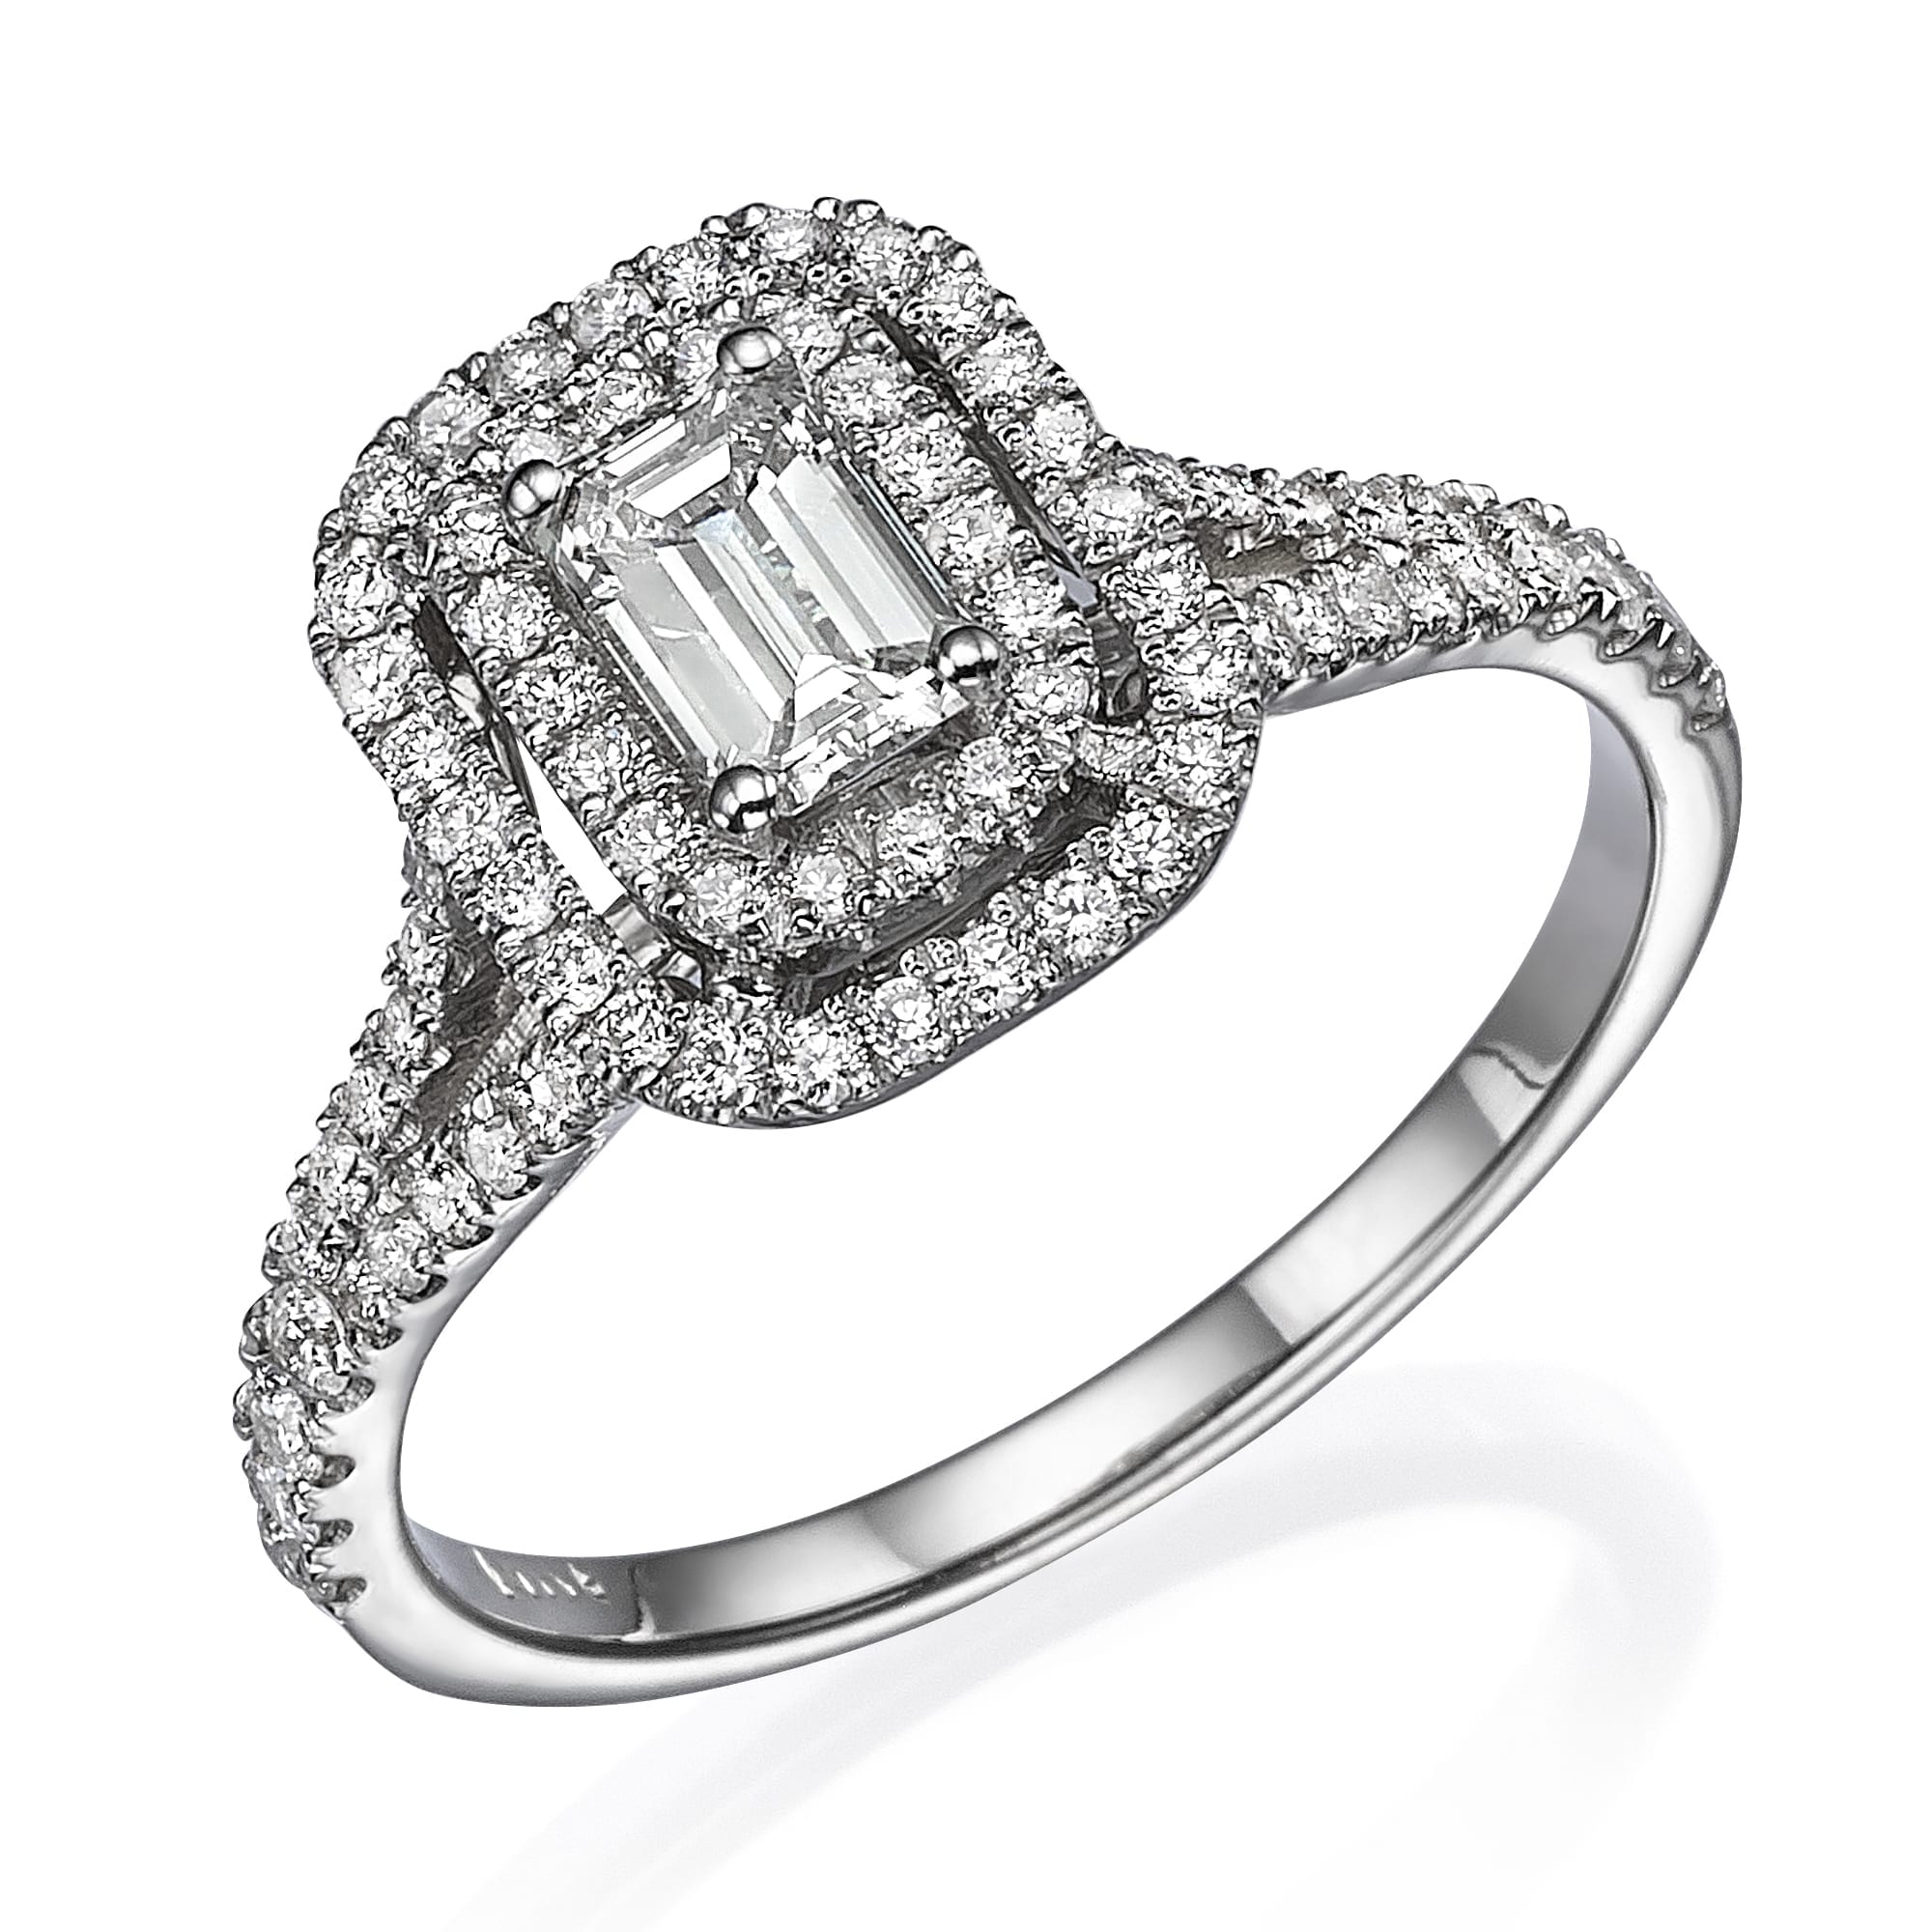 דגם אלין אלגנטי של טבעת אירוסין עם אבן חן מרכזית מלבנית מוקפת הילה כפולה של יהלומים משובצים בפאב, המציגה עיצוב קלאסי ויוקרתי.